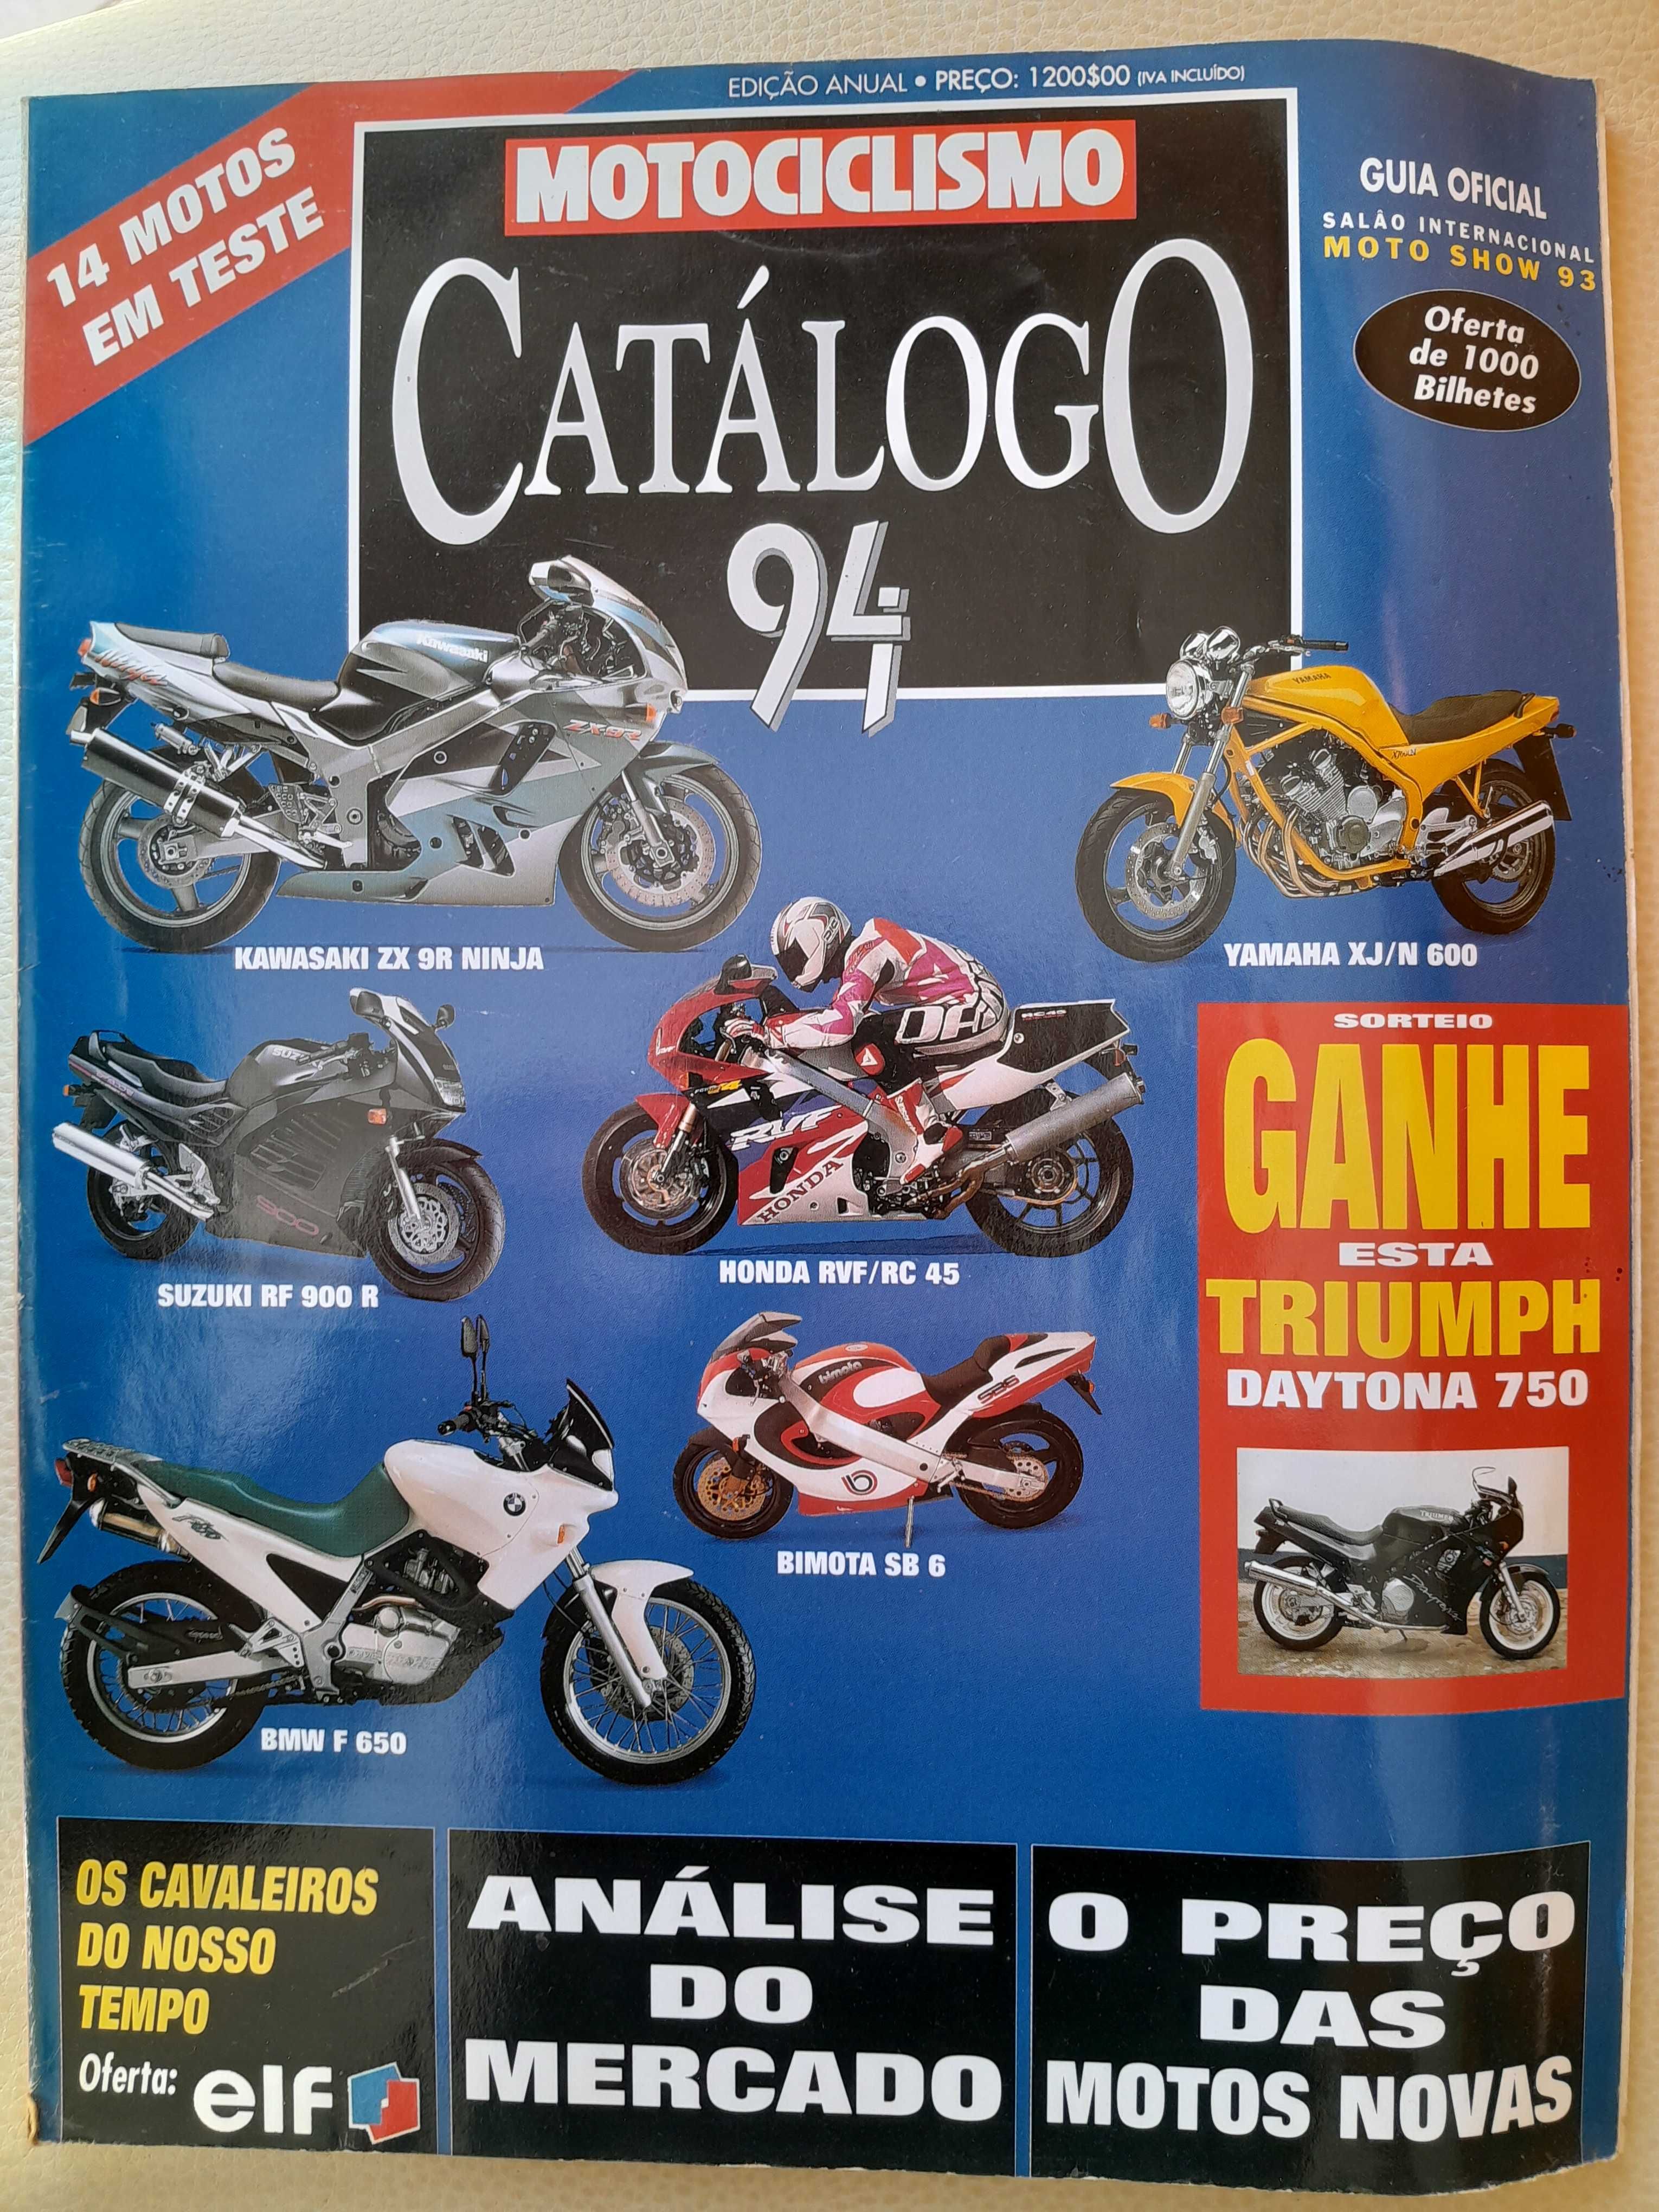 Catalogos Motociclismo 1994 e 1995